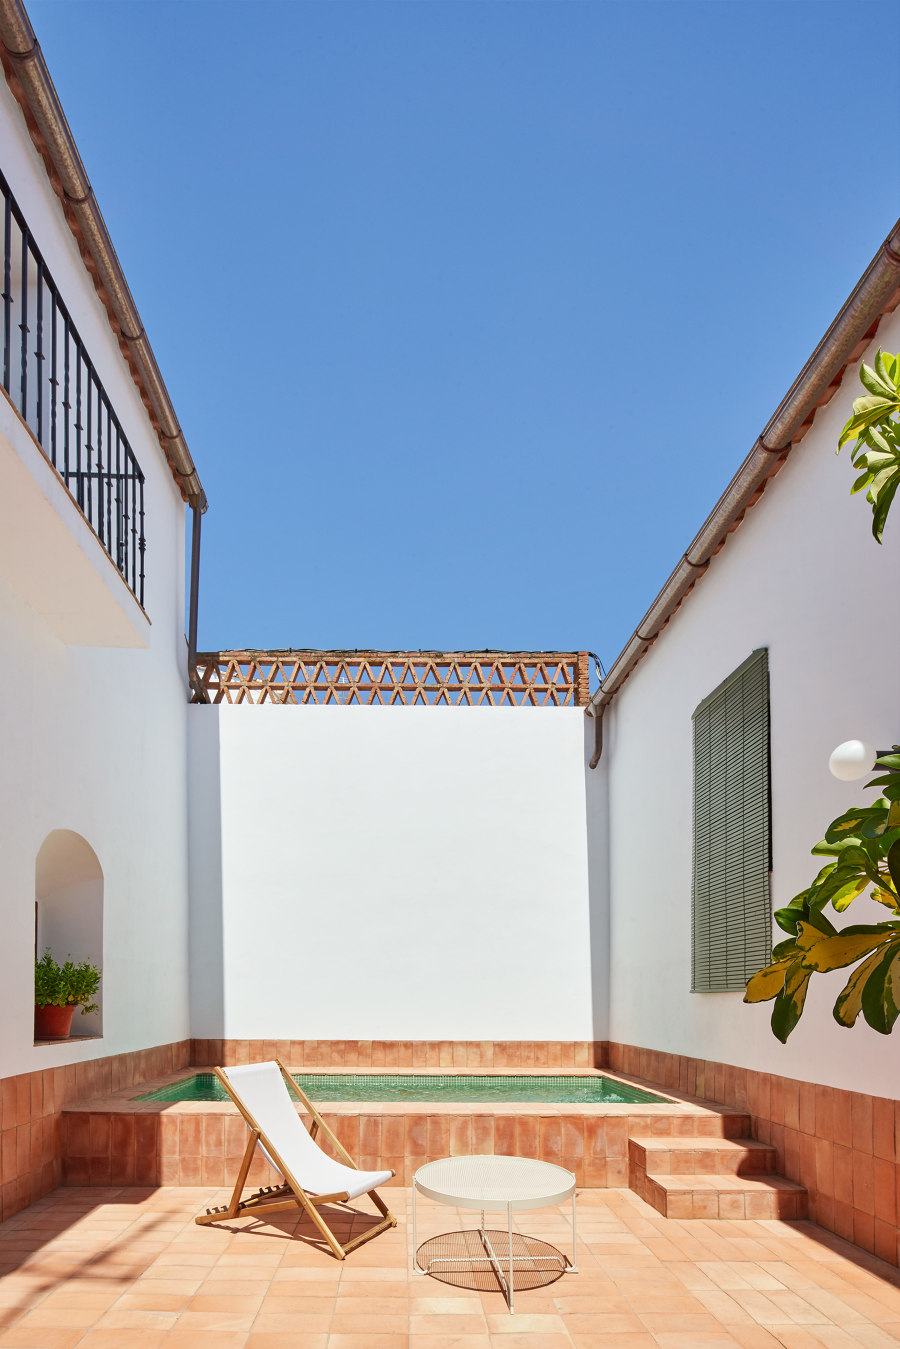 Casa Villalba de los Barros by Lucas y Hernández-Gil Arquitectos | Living space